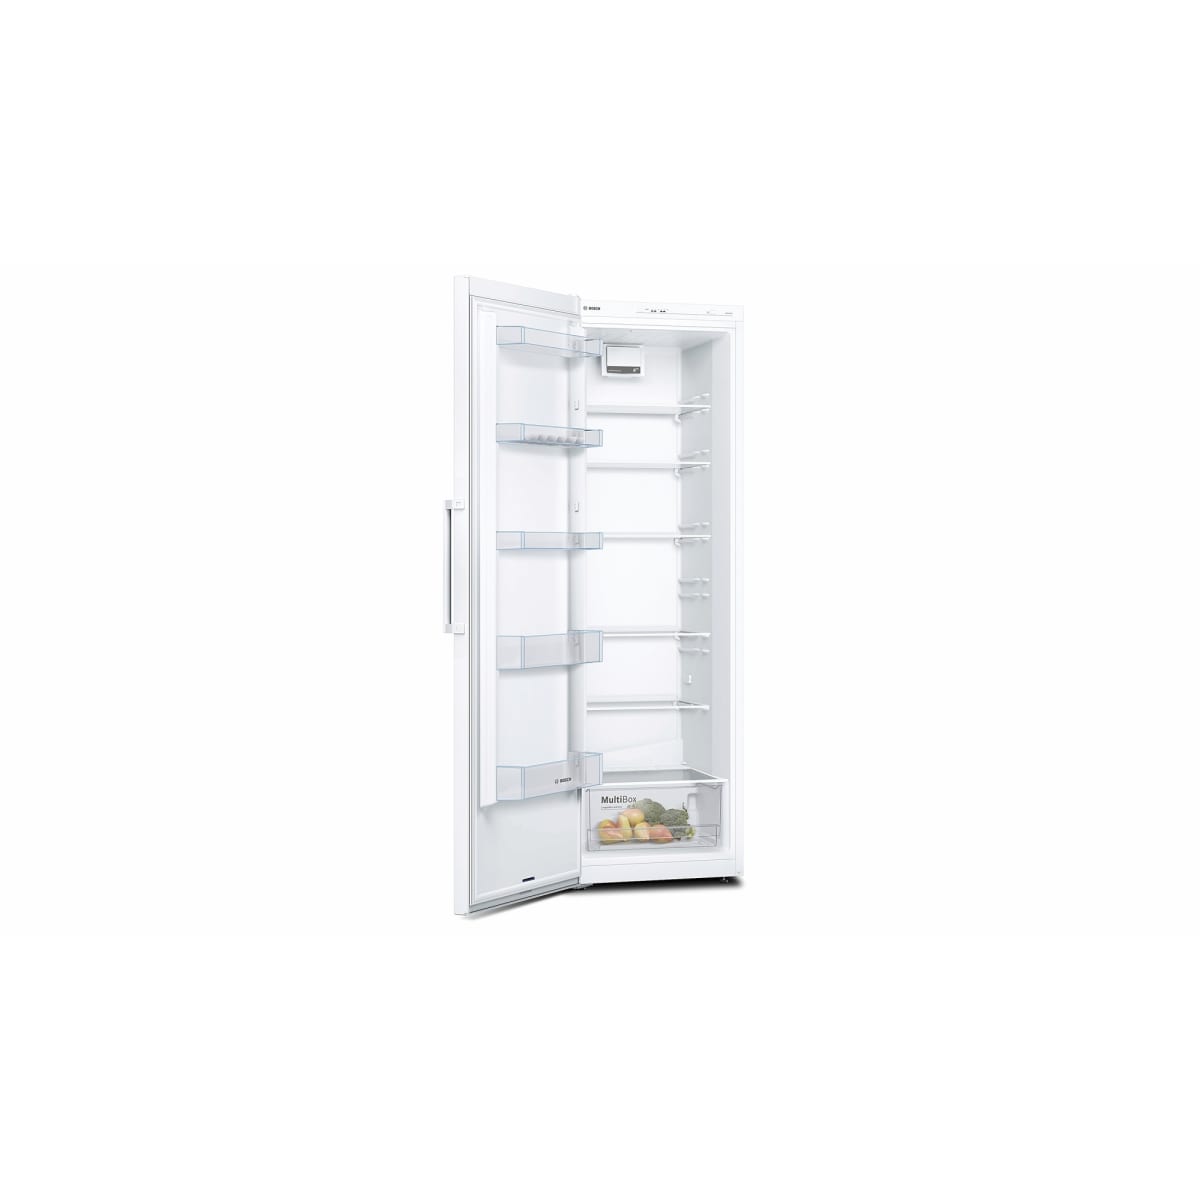 Bosch Serie 2 KSV36NW3P A++ valkoinen jääkaappi | Karkkainen.com  verkkokauppa